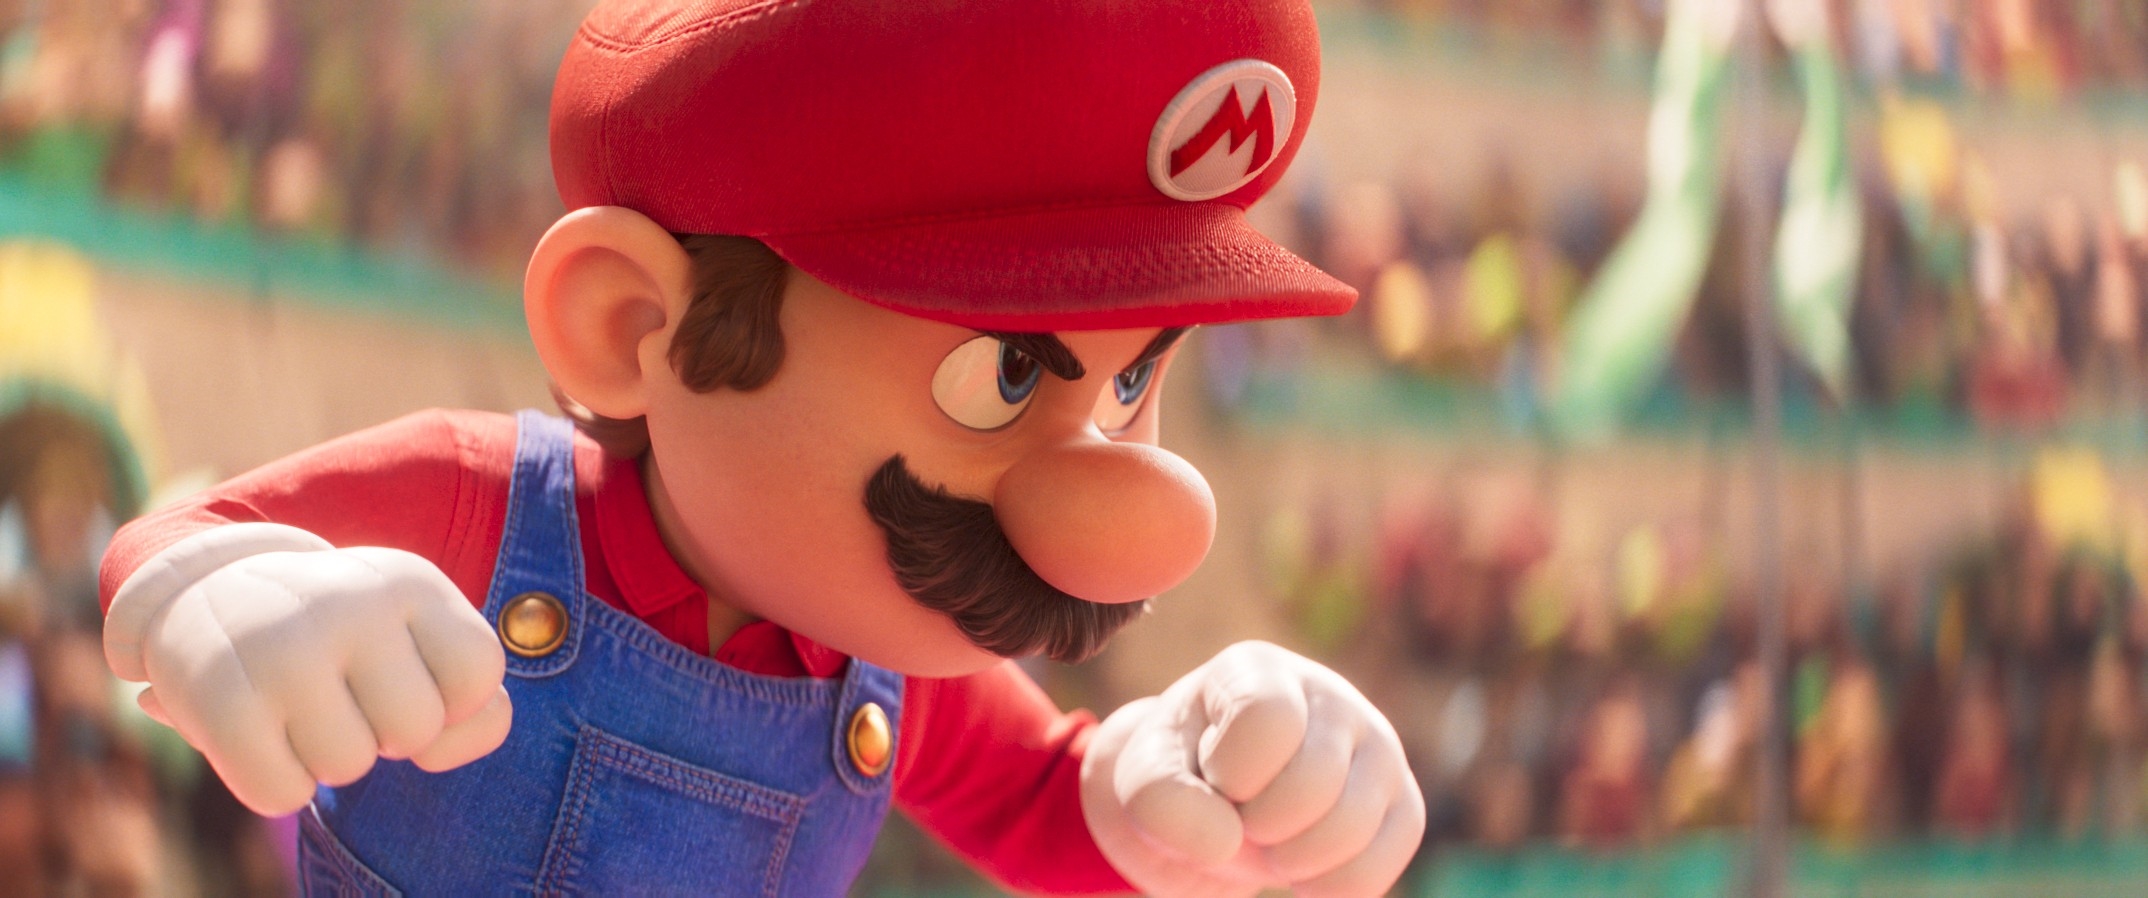 ‘Super Mario Bros. Movie' review: A fun but safe Mushroom Kingdom romp | DeviceDaily.com